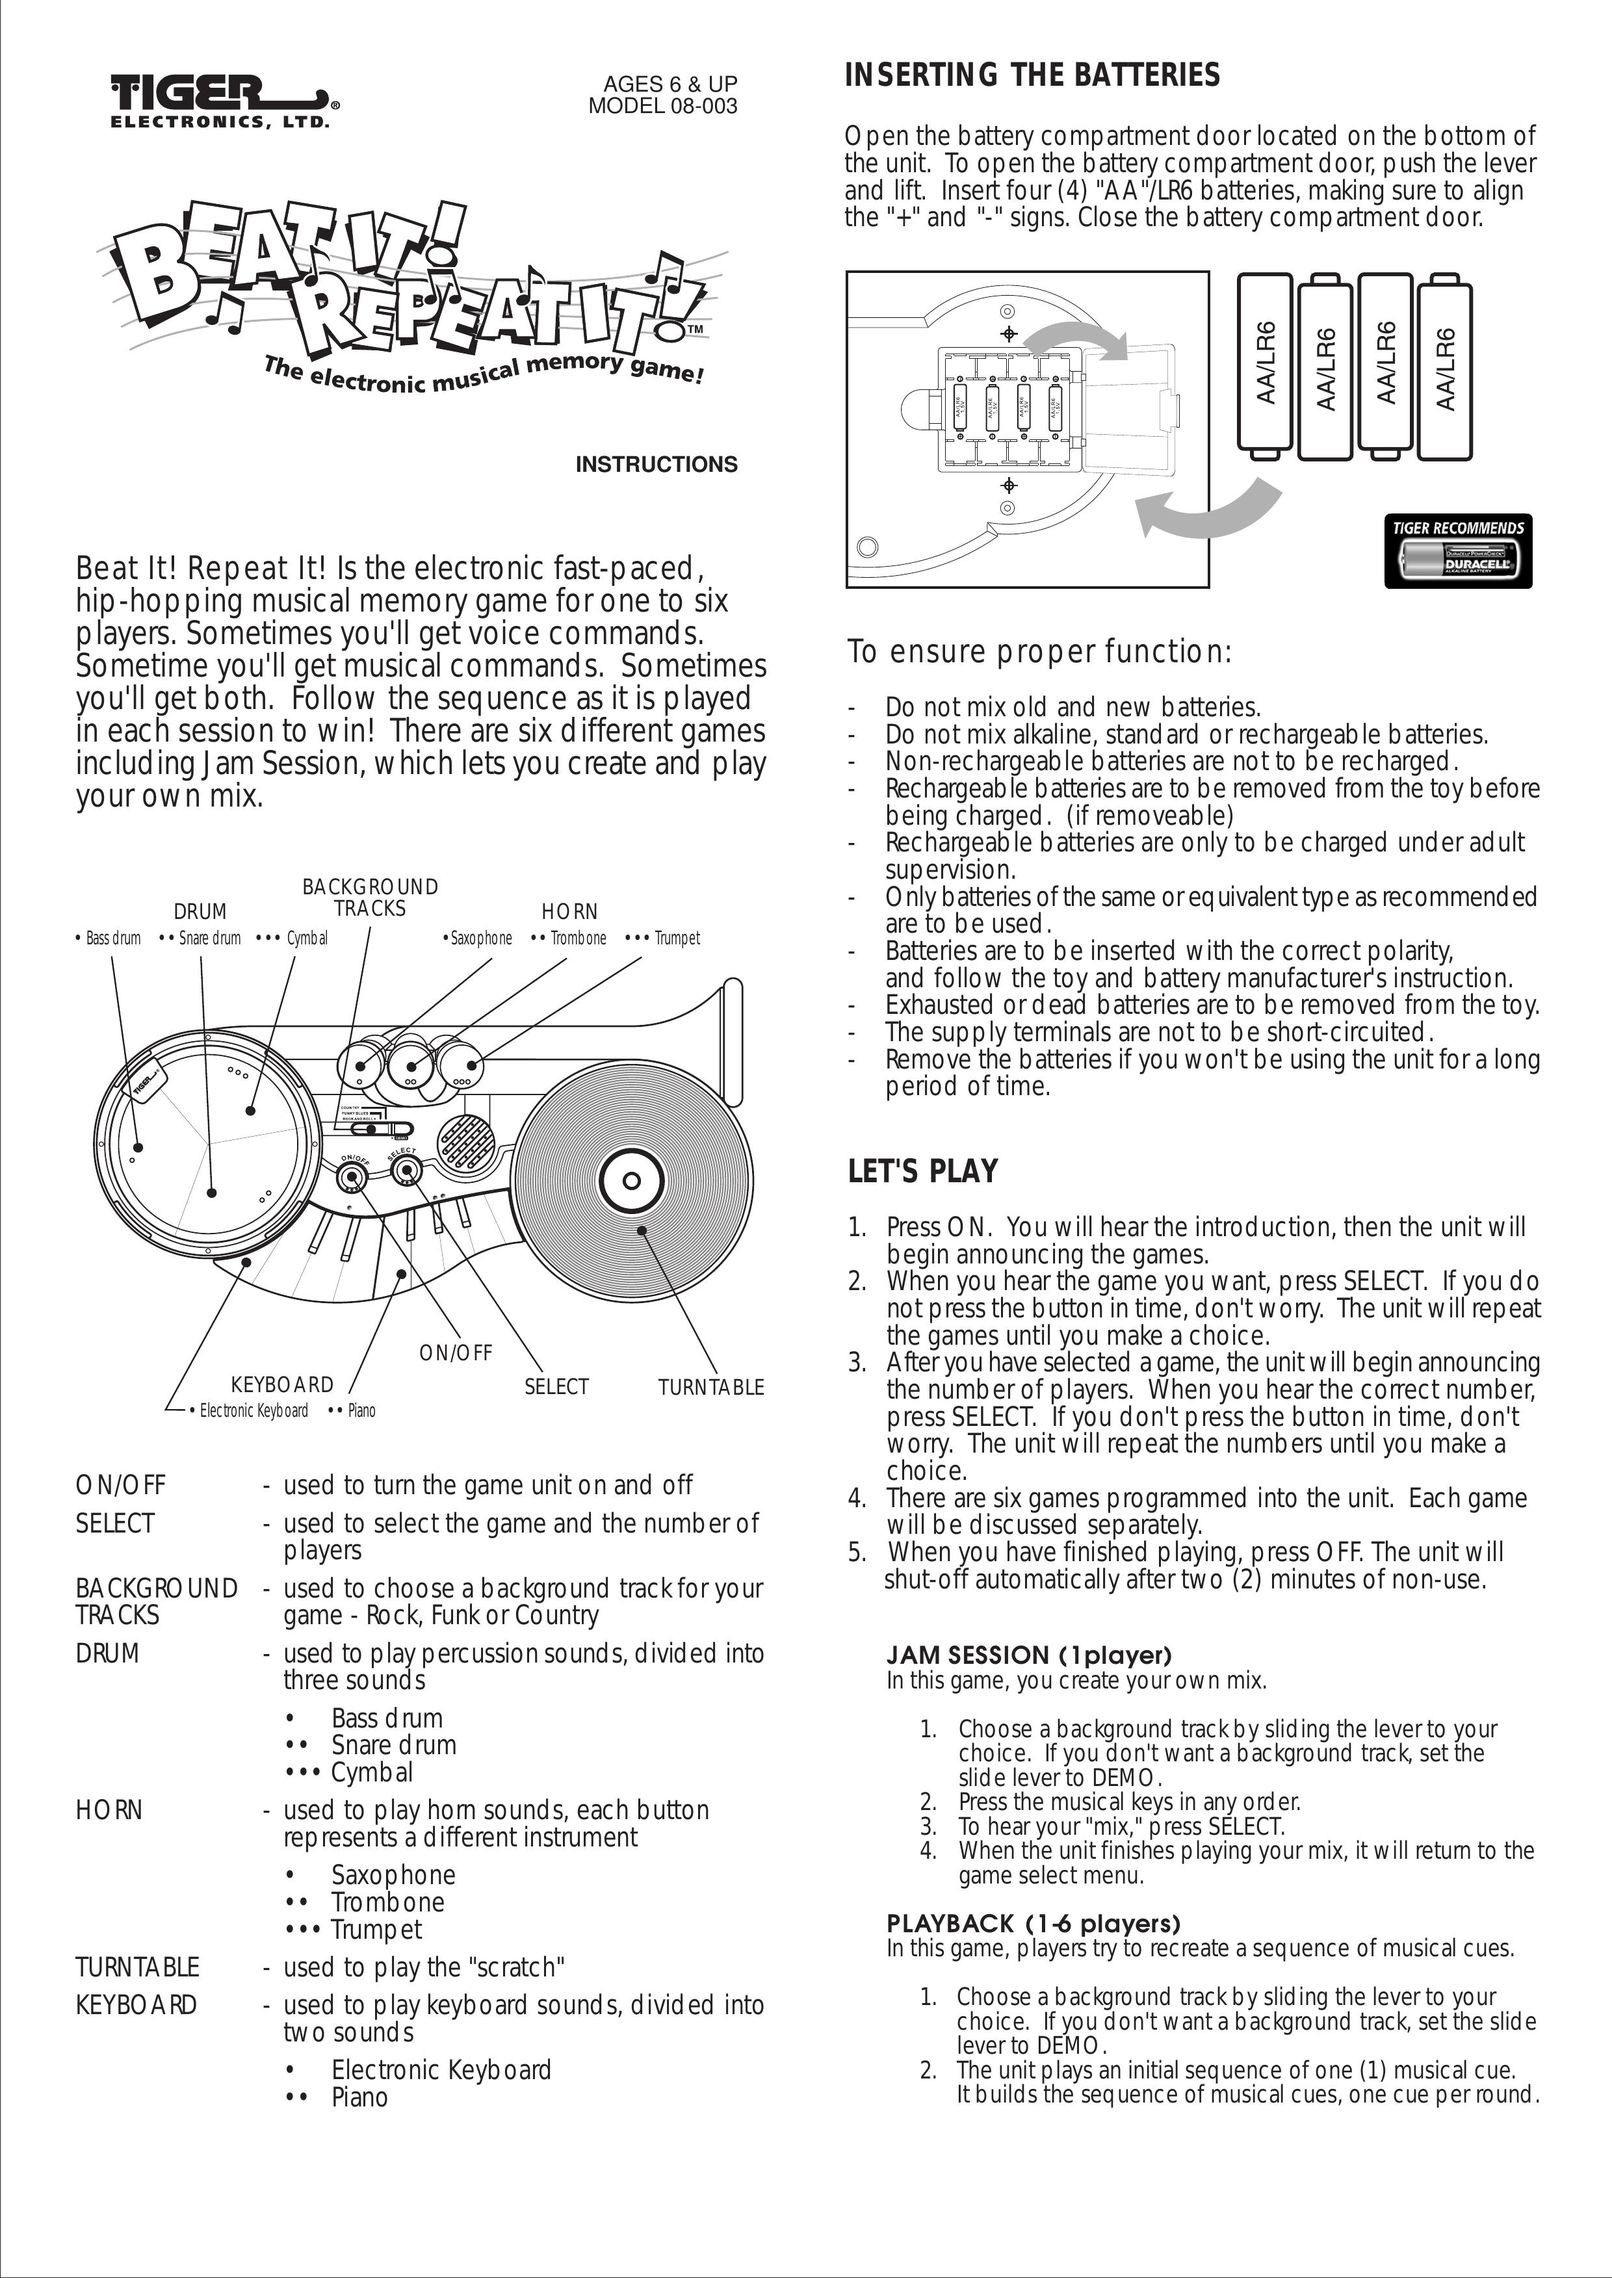 Hasbro 08-003 Games User Manual